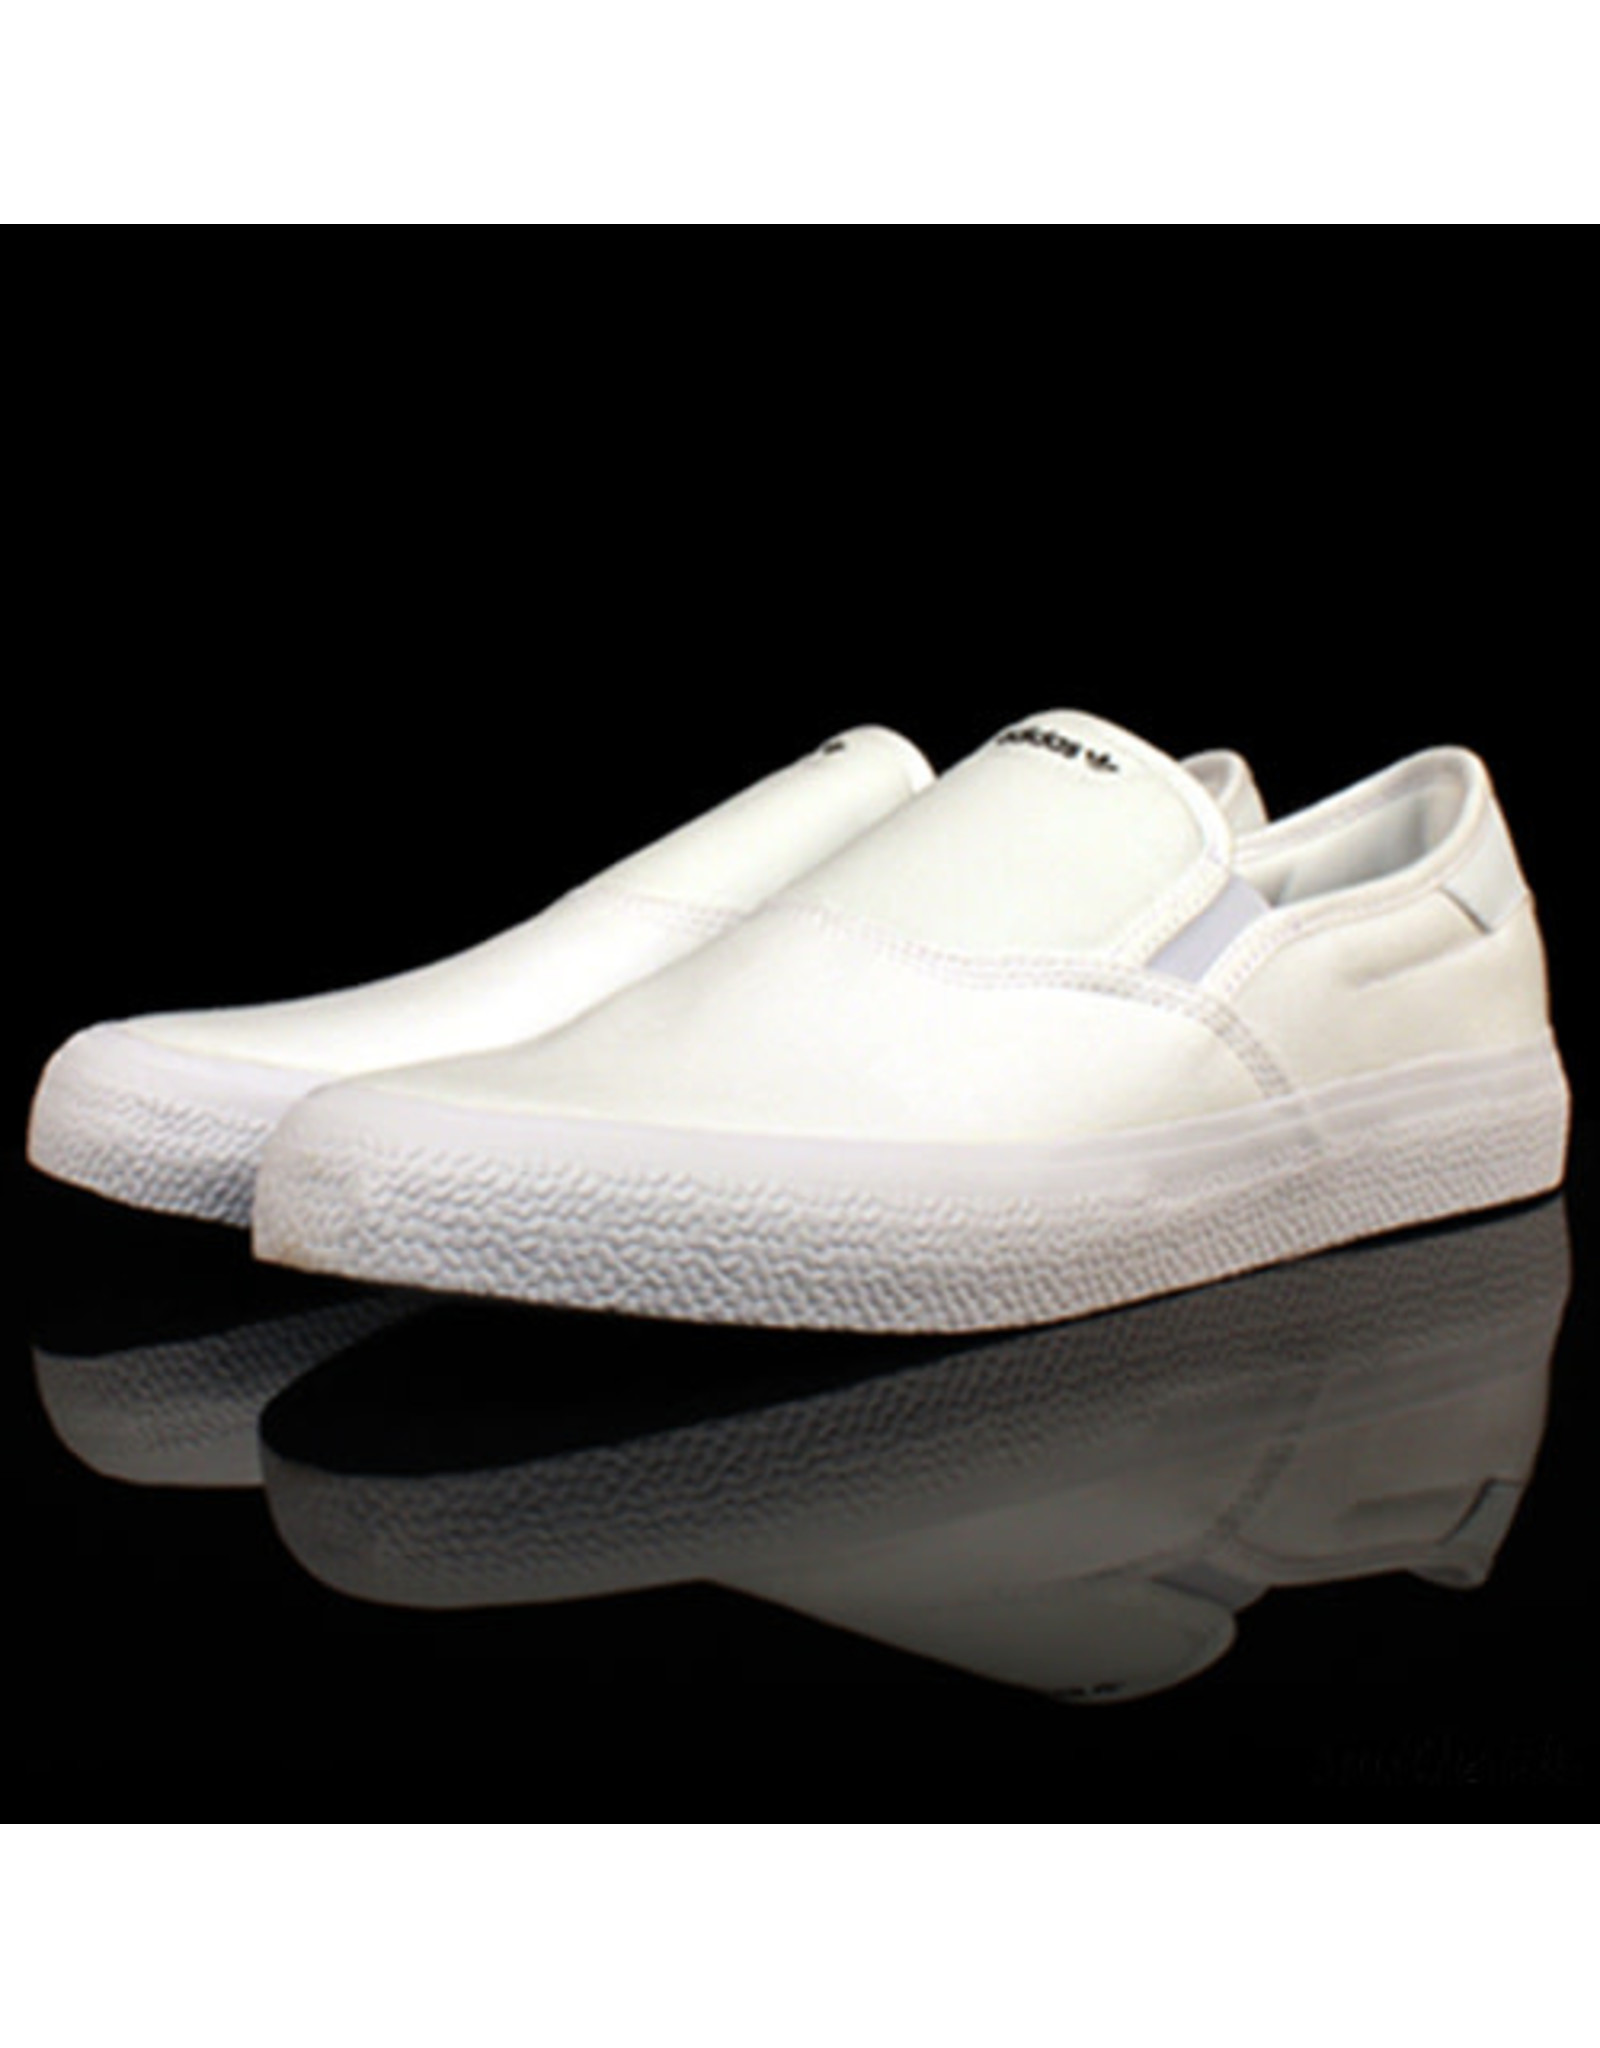 adidas 3mc slip on white